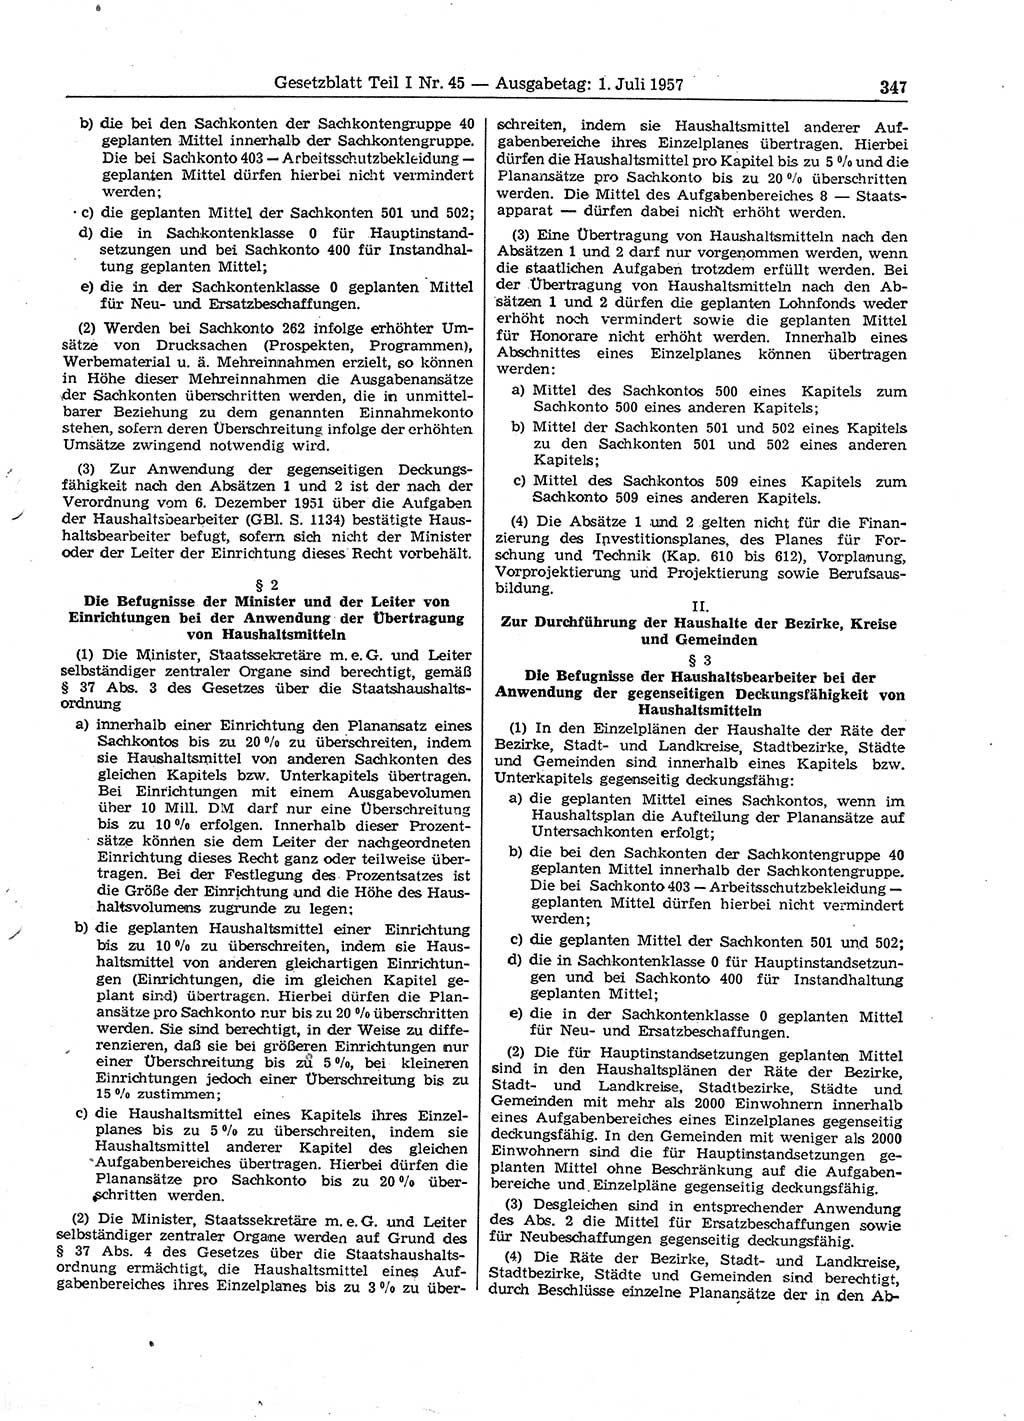 Gesetzblatt (GBl.) der Deutschen Demokratischen Republik (DDR) Teil Ⅰ 1957, Seite 347 (GBl. DDR Ⅰ 1957, S. 347)